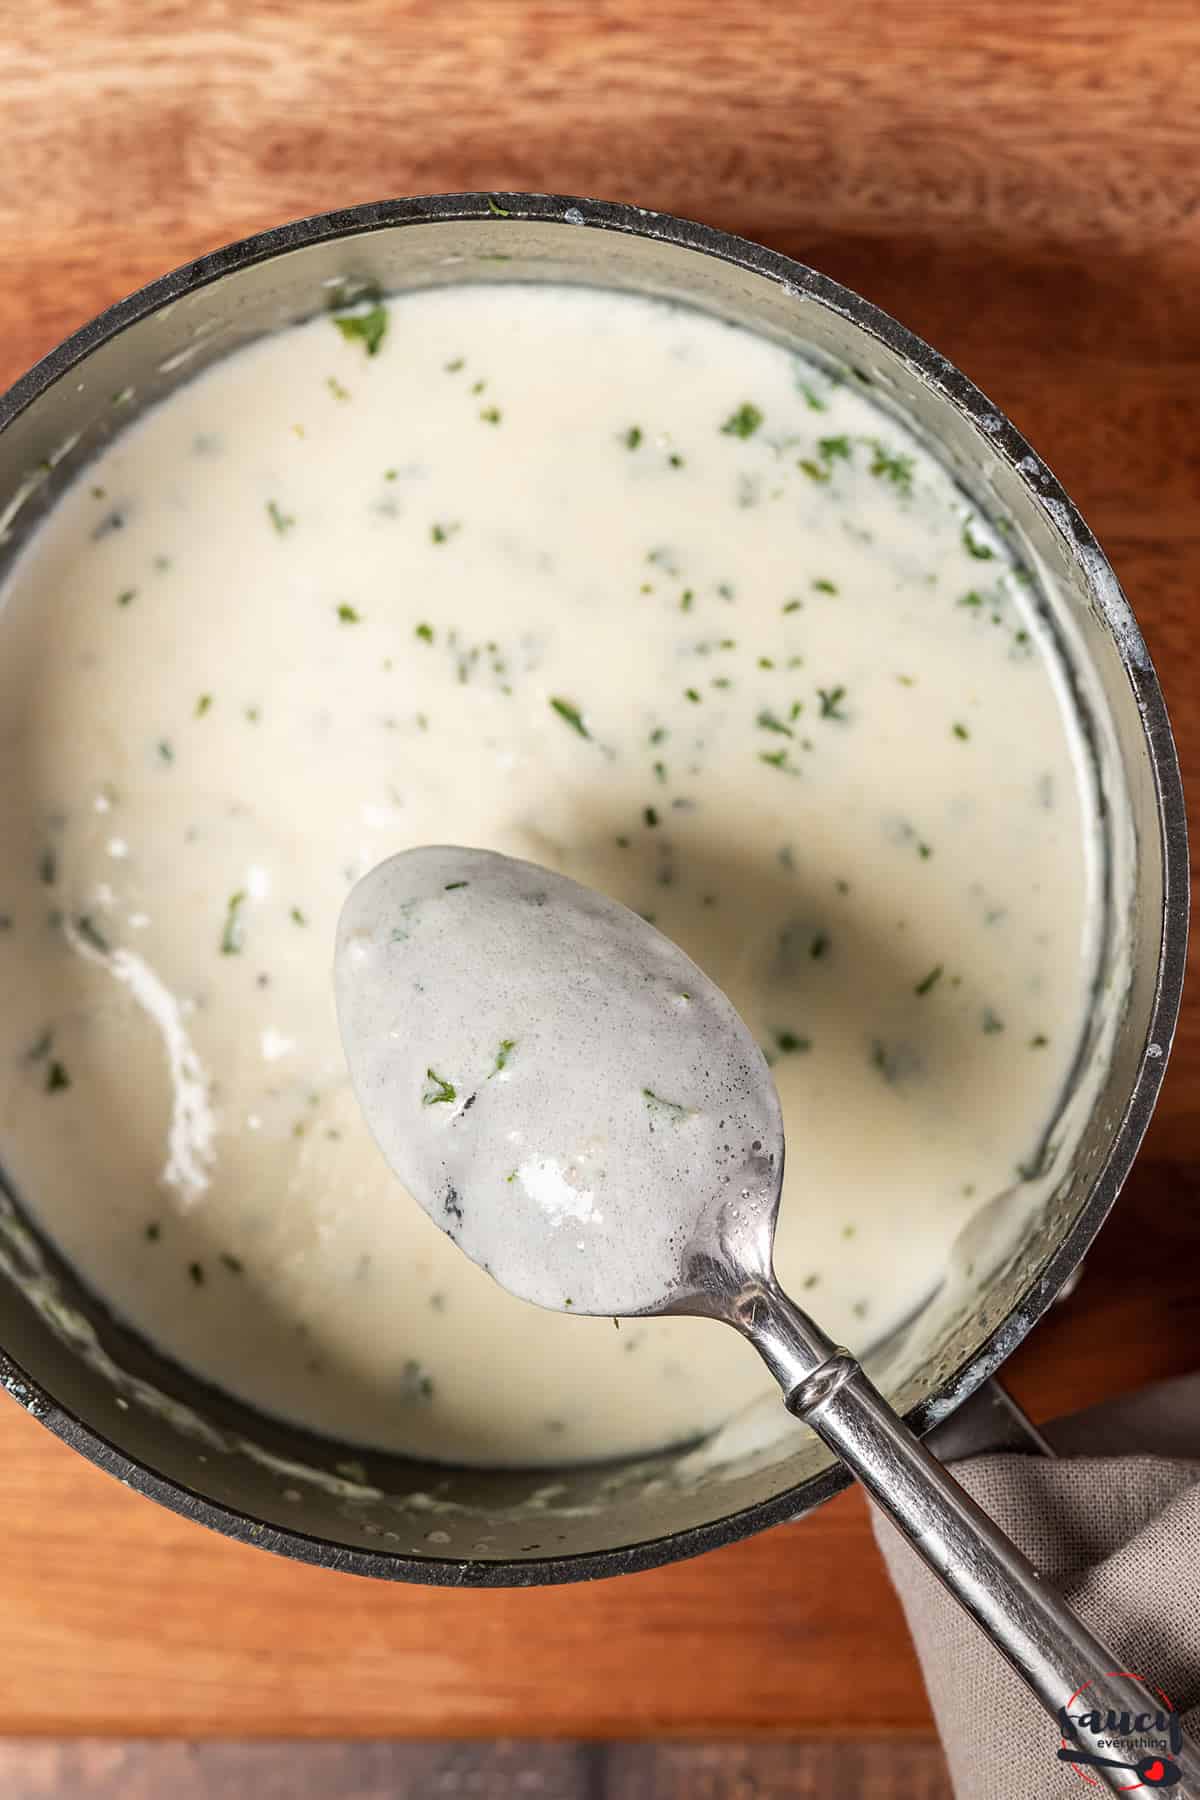 A spoon over a bowl of garlic cream sauce